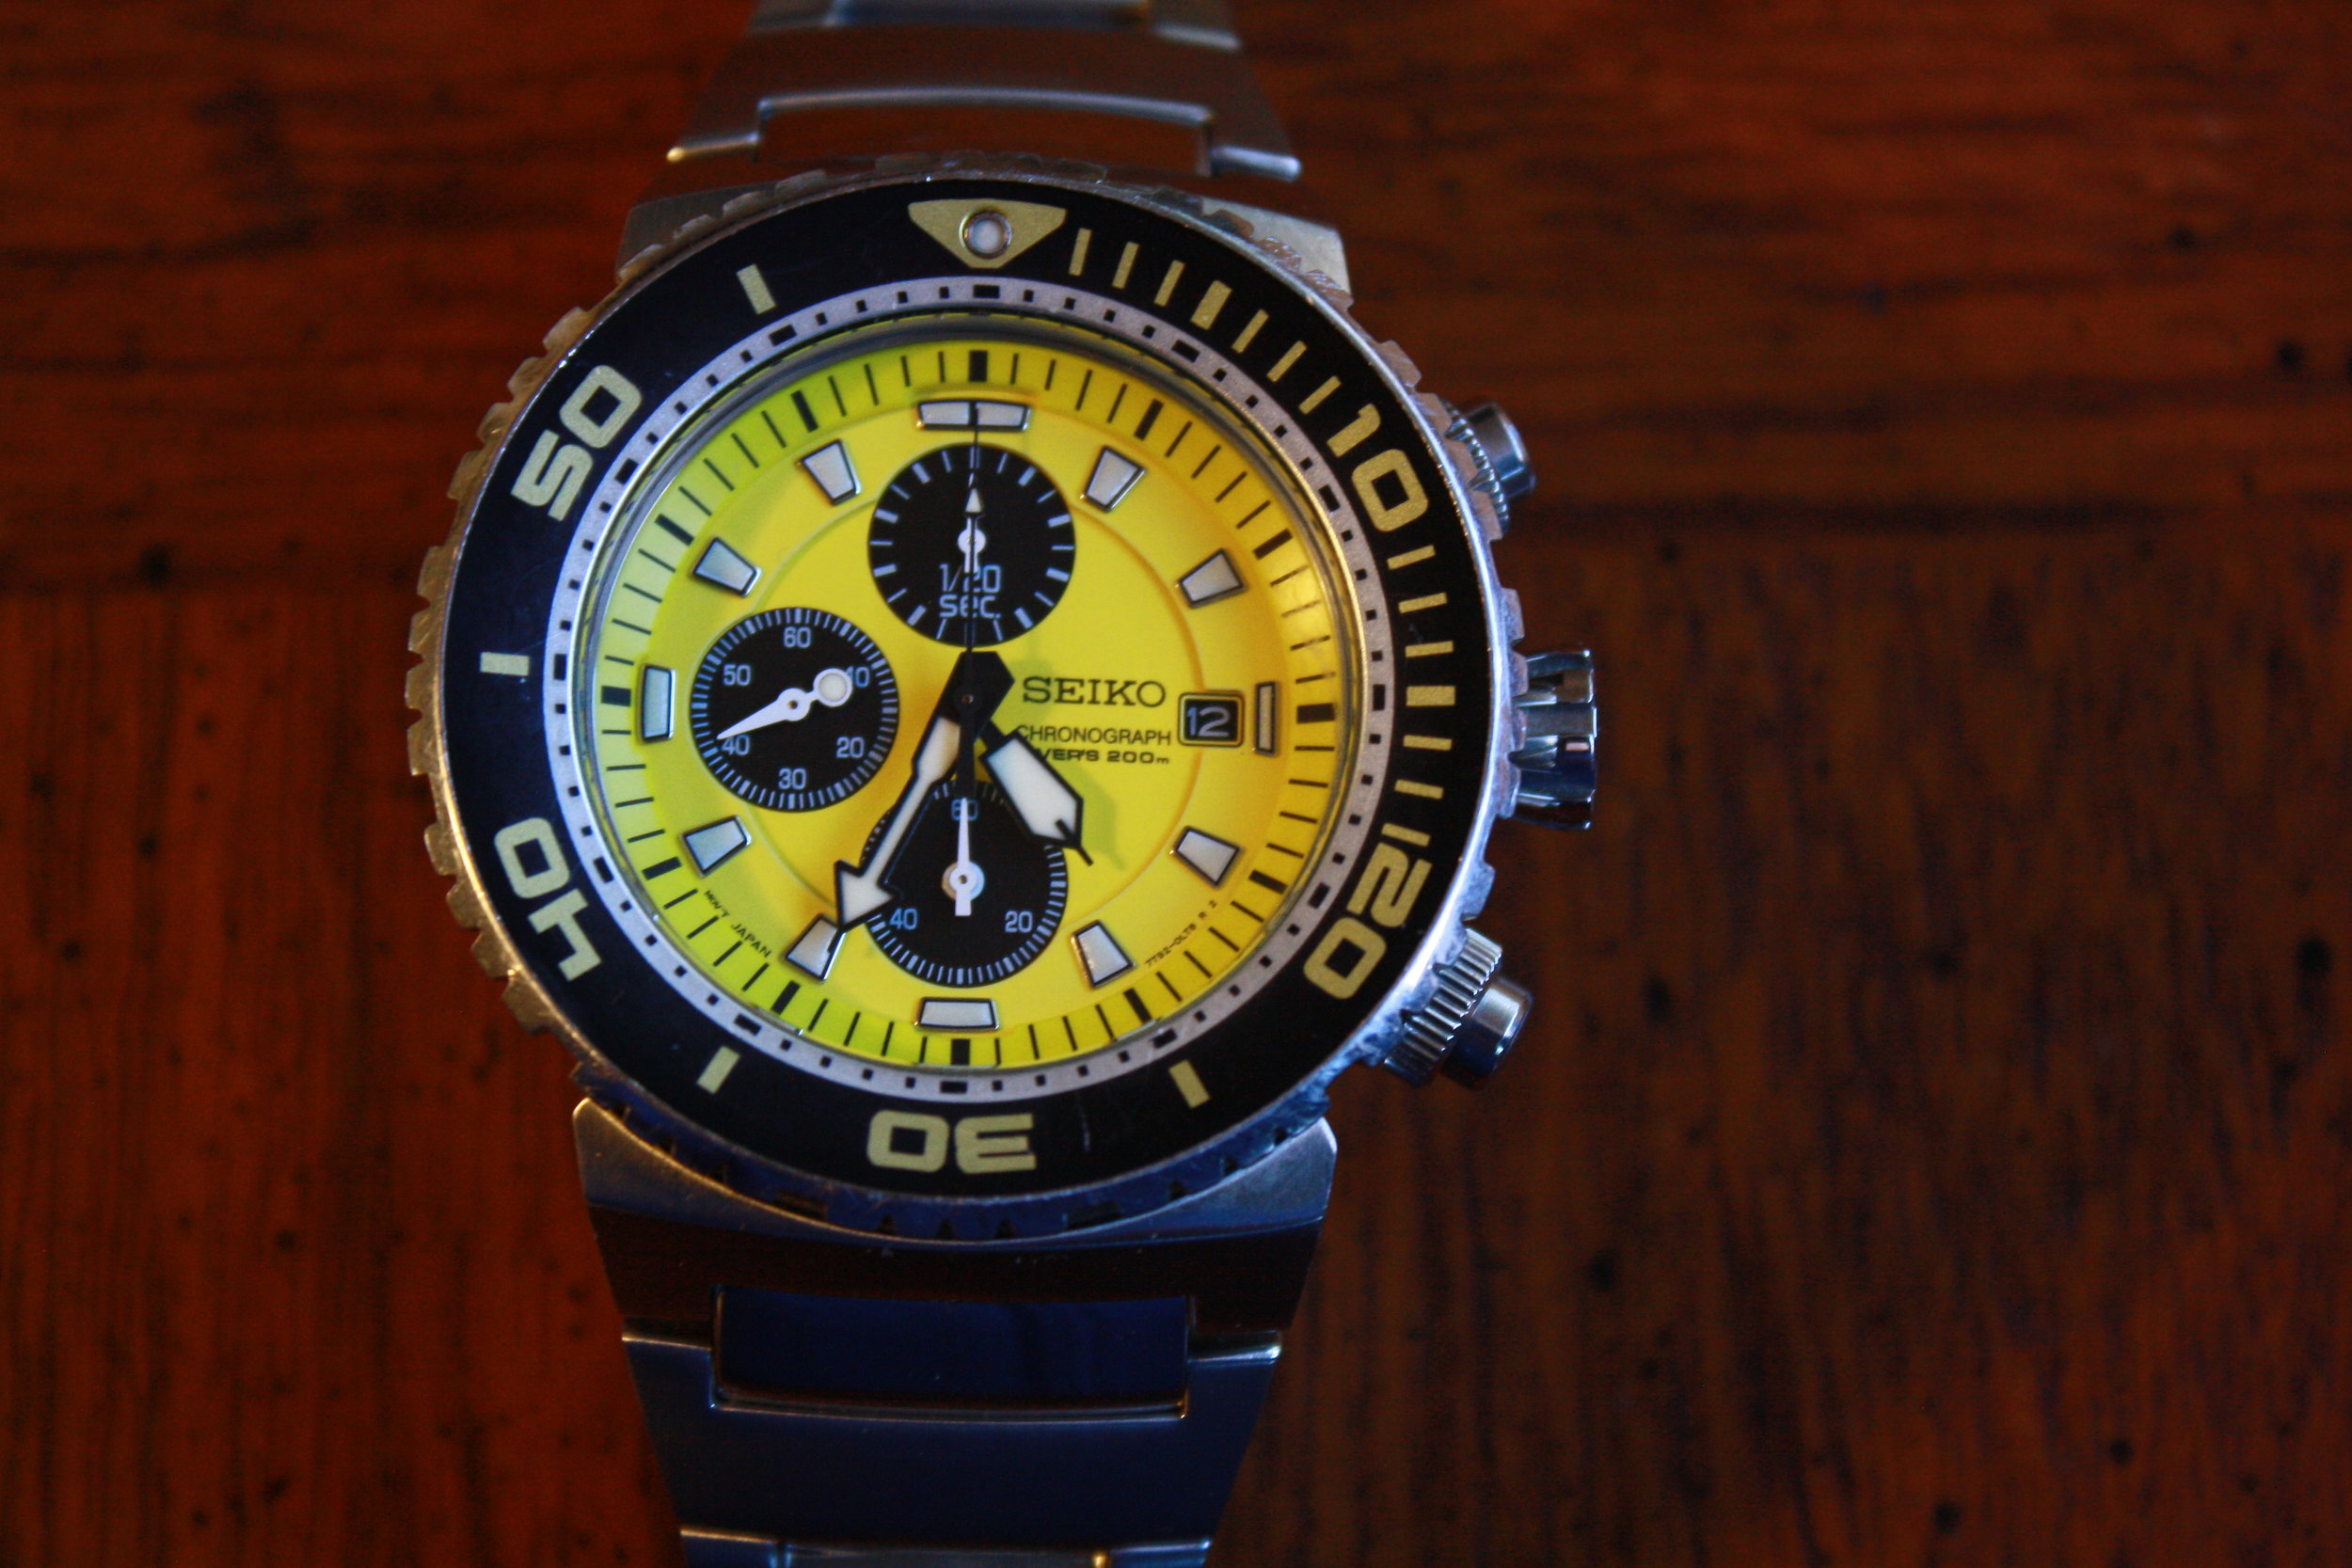 Seiko 'Caesar' SNDA15 (7T92-0JG0) 200m Dive Watch - Yellow! — Klein Vintage  Watch